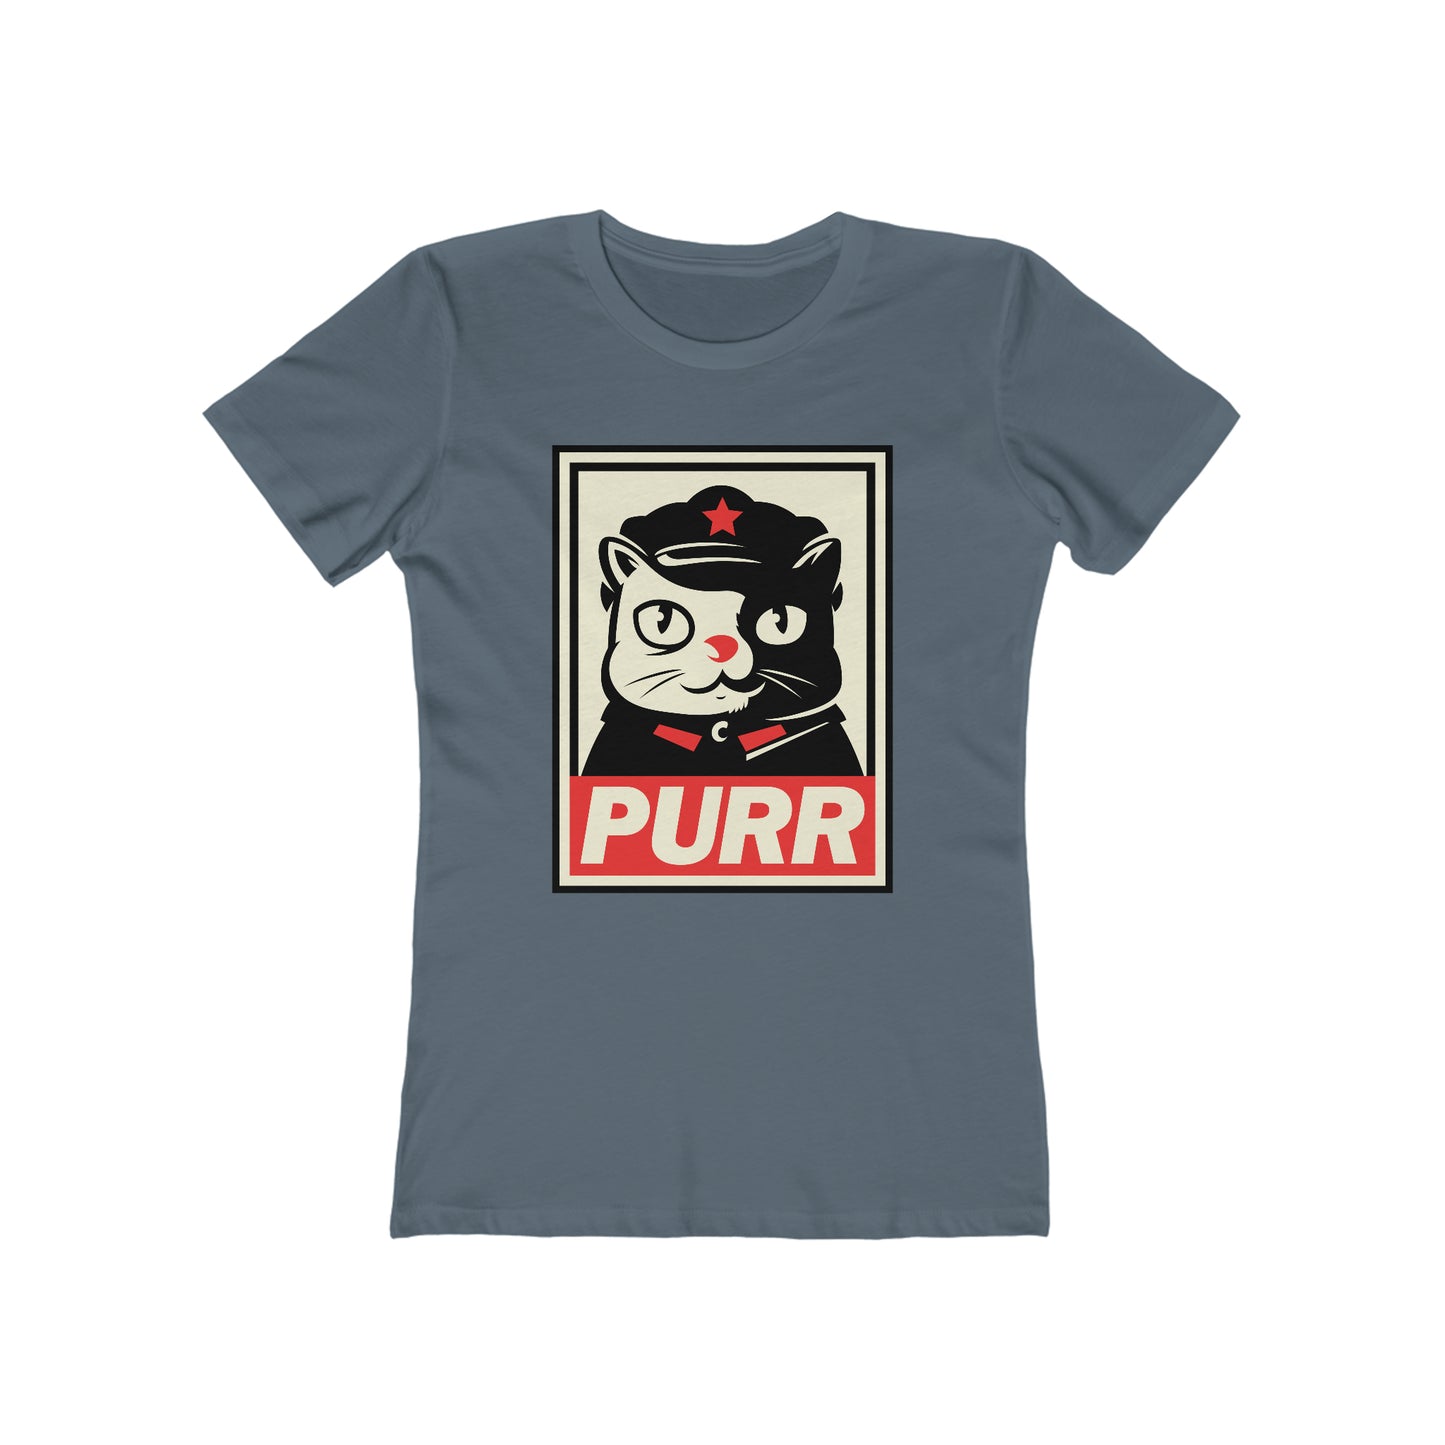 Communism Purr 2 - Women's T-shirt